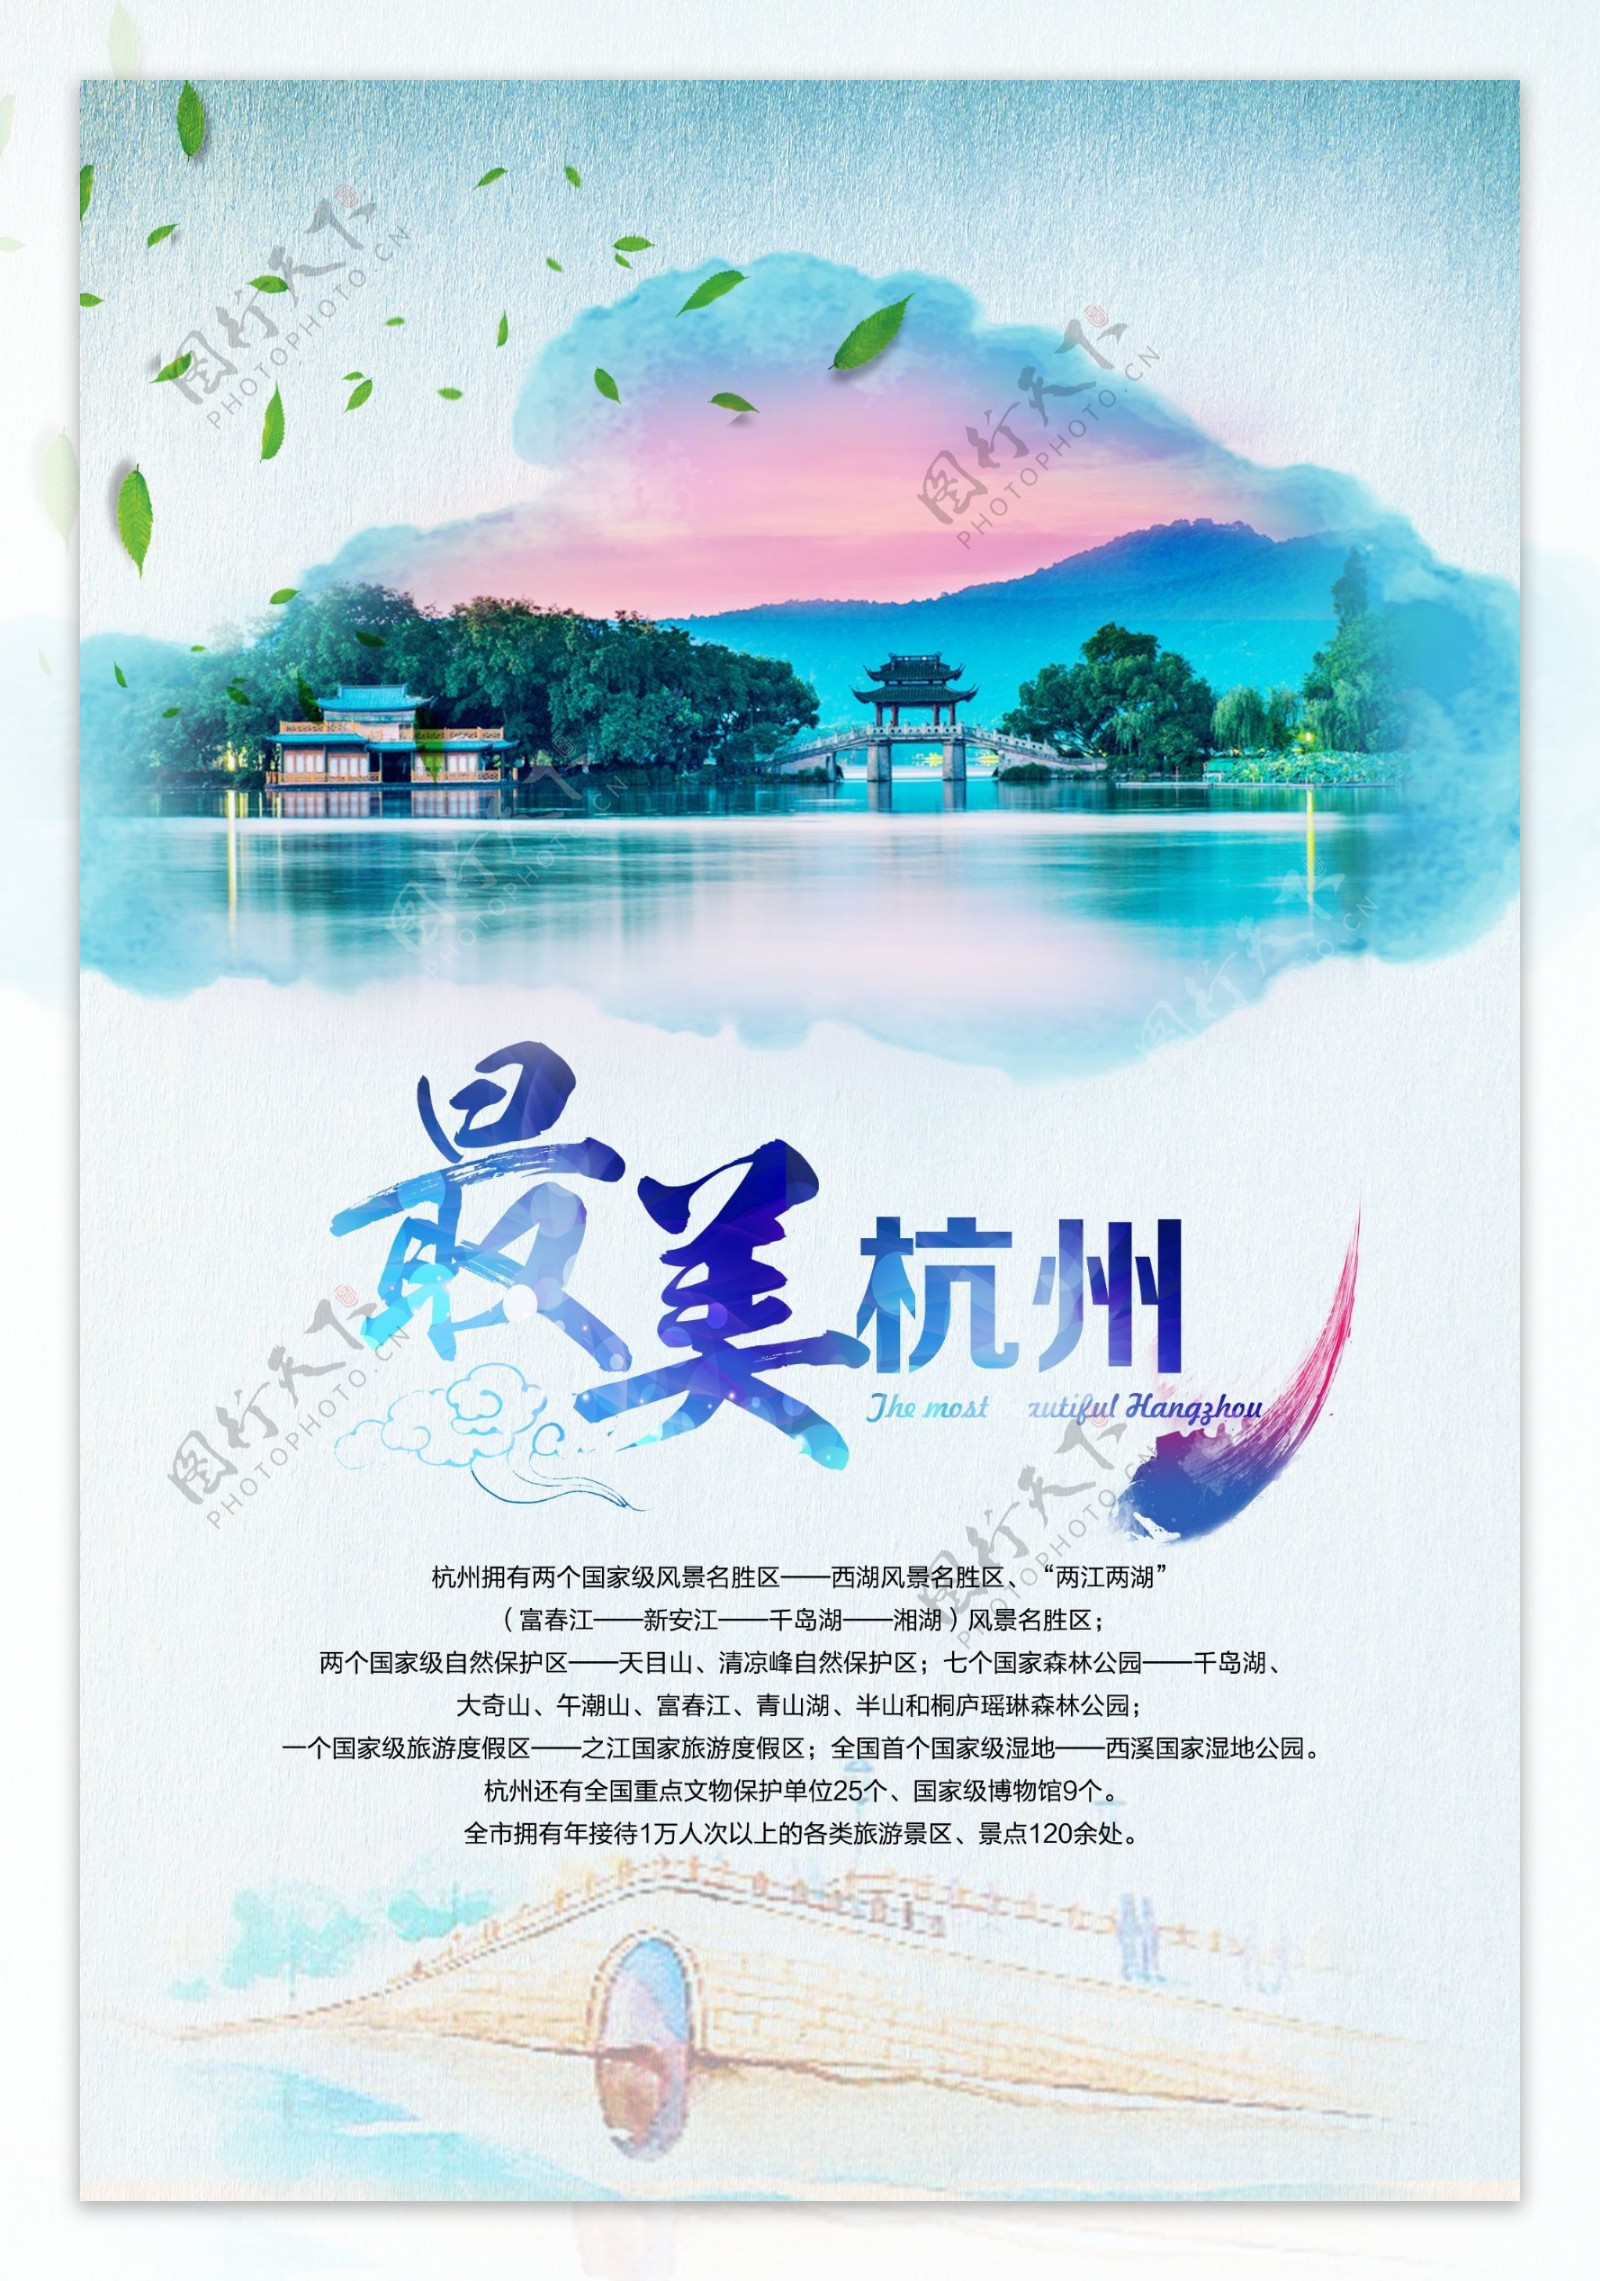 最美杭州旅游活动促销海报素材